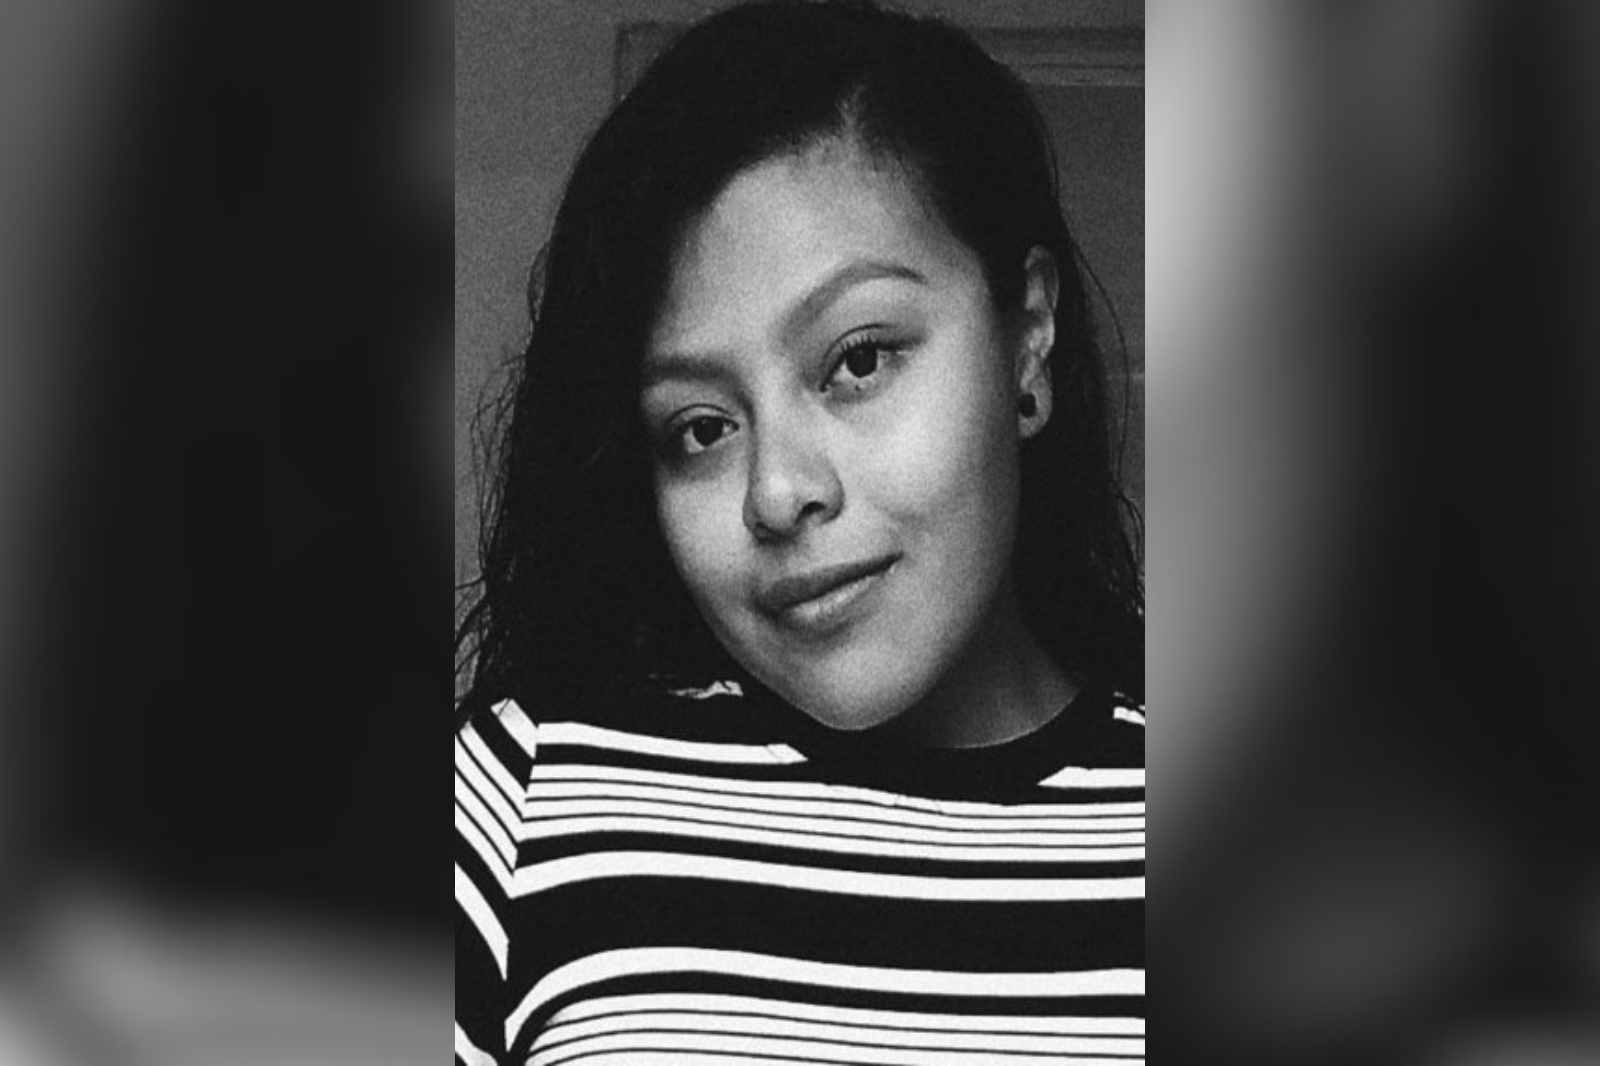 Protocolo Alba Quintana Roo: Reportan desaparición de Isolina Alejandra Dzib Dzib en Cancún